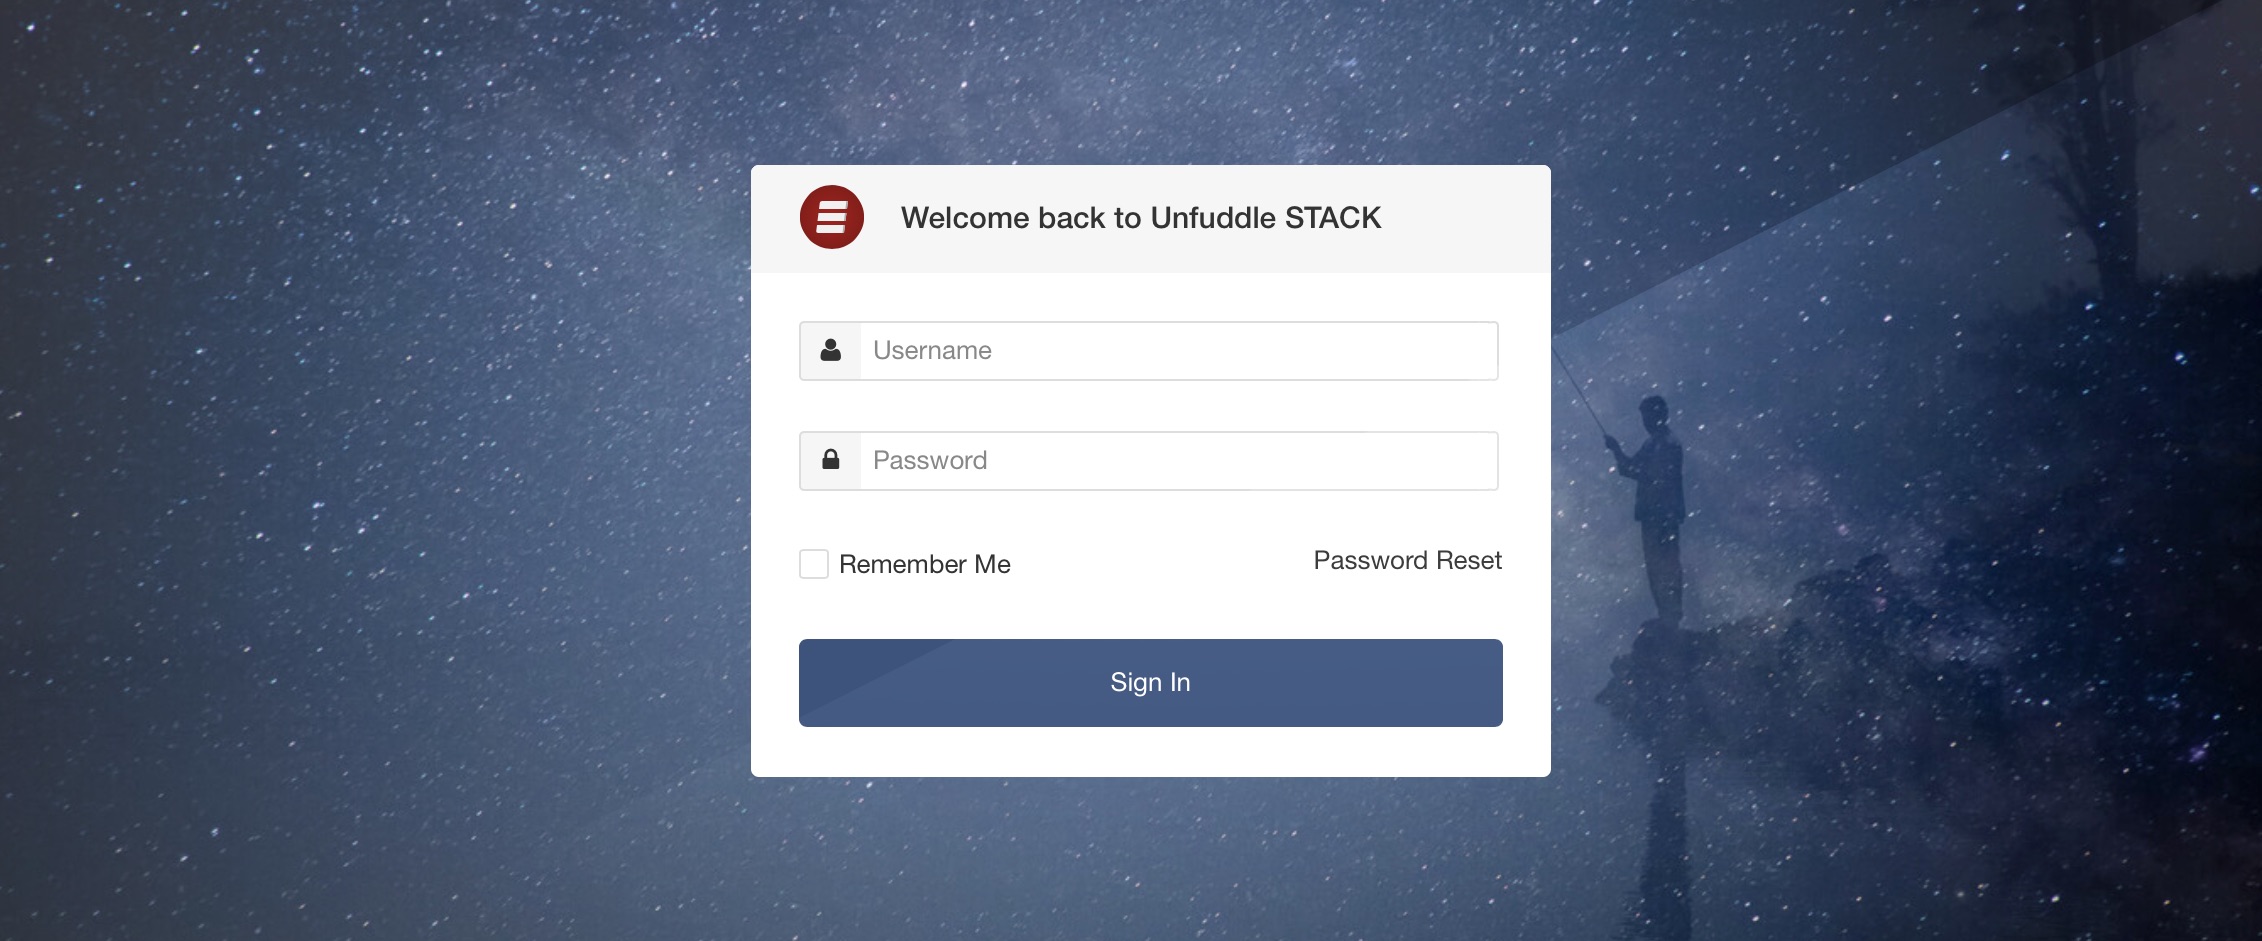 Unfuddle STACK UI Updates